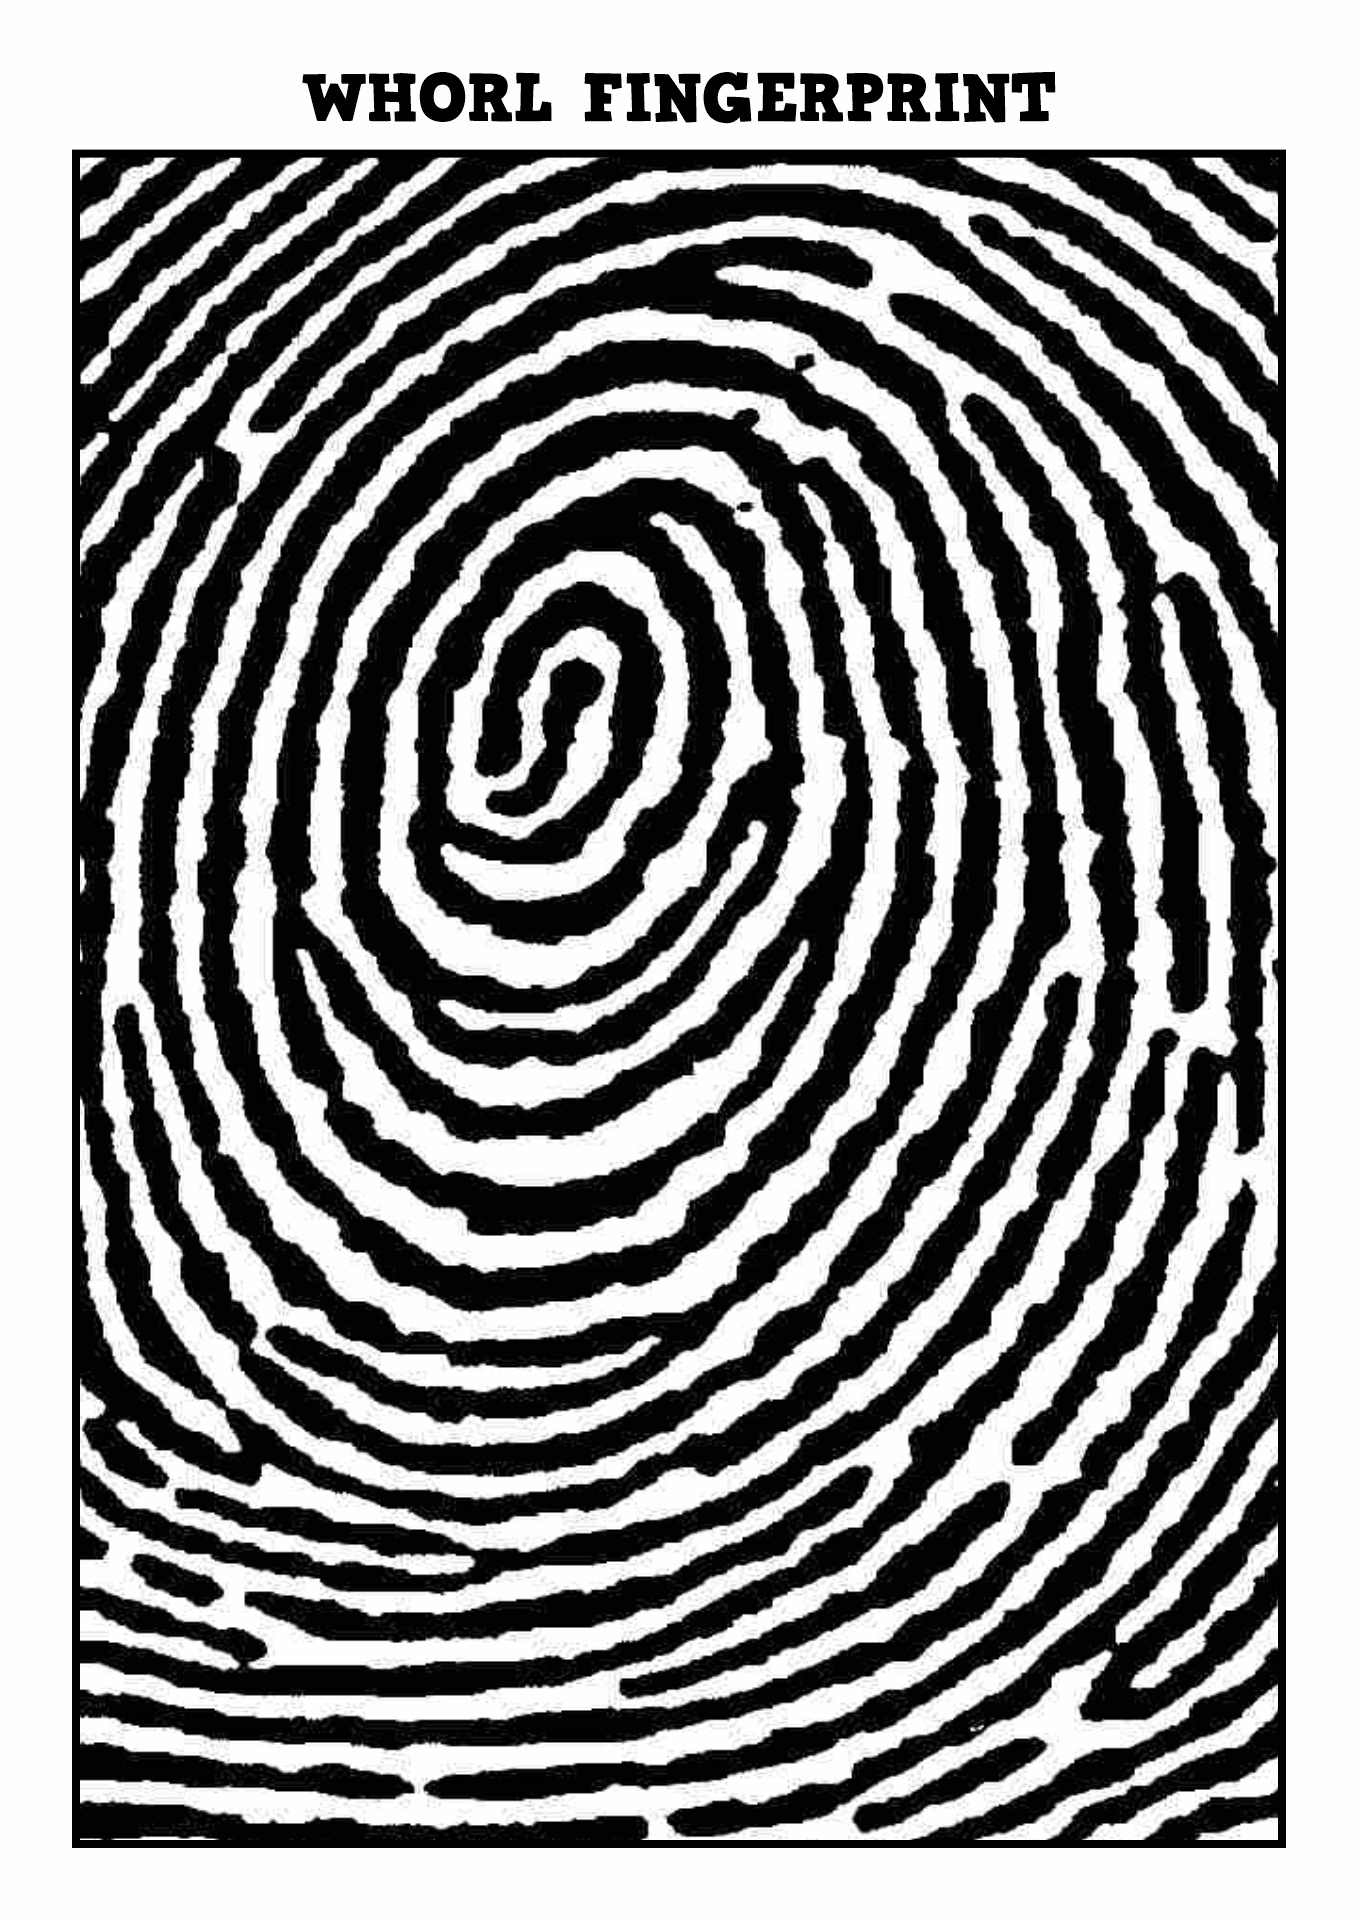 Whorl Fingerprint Image